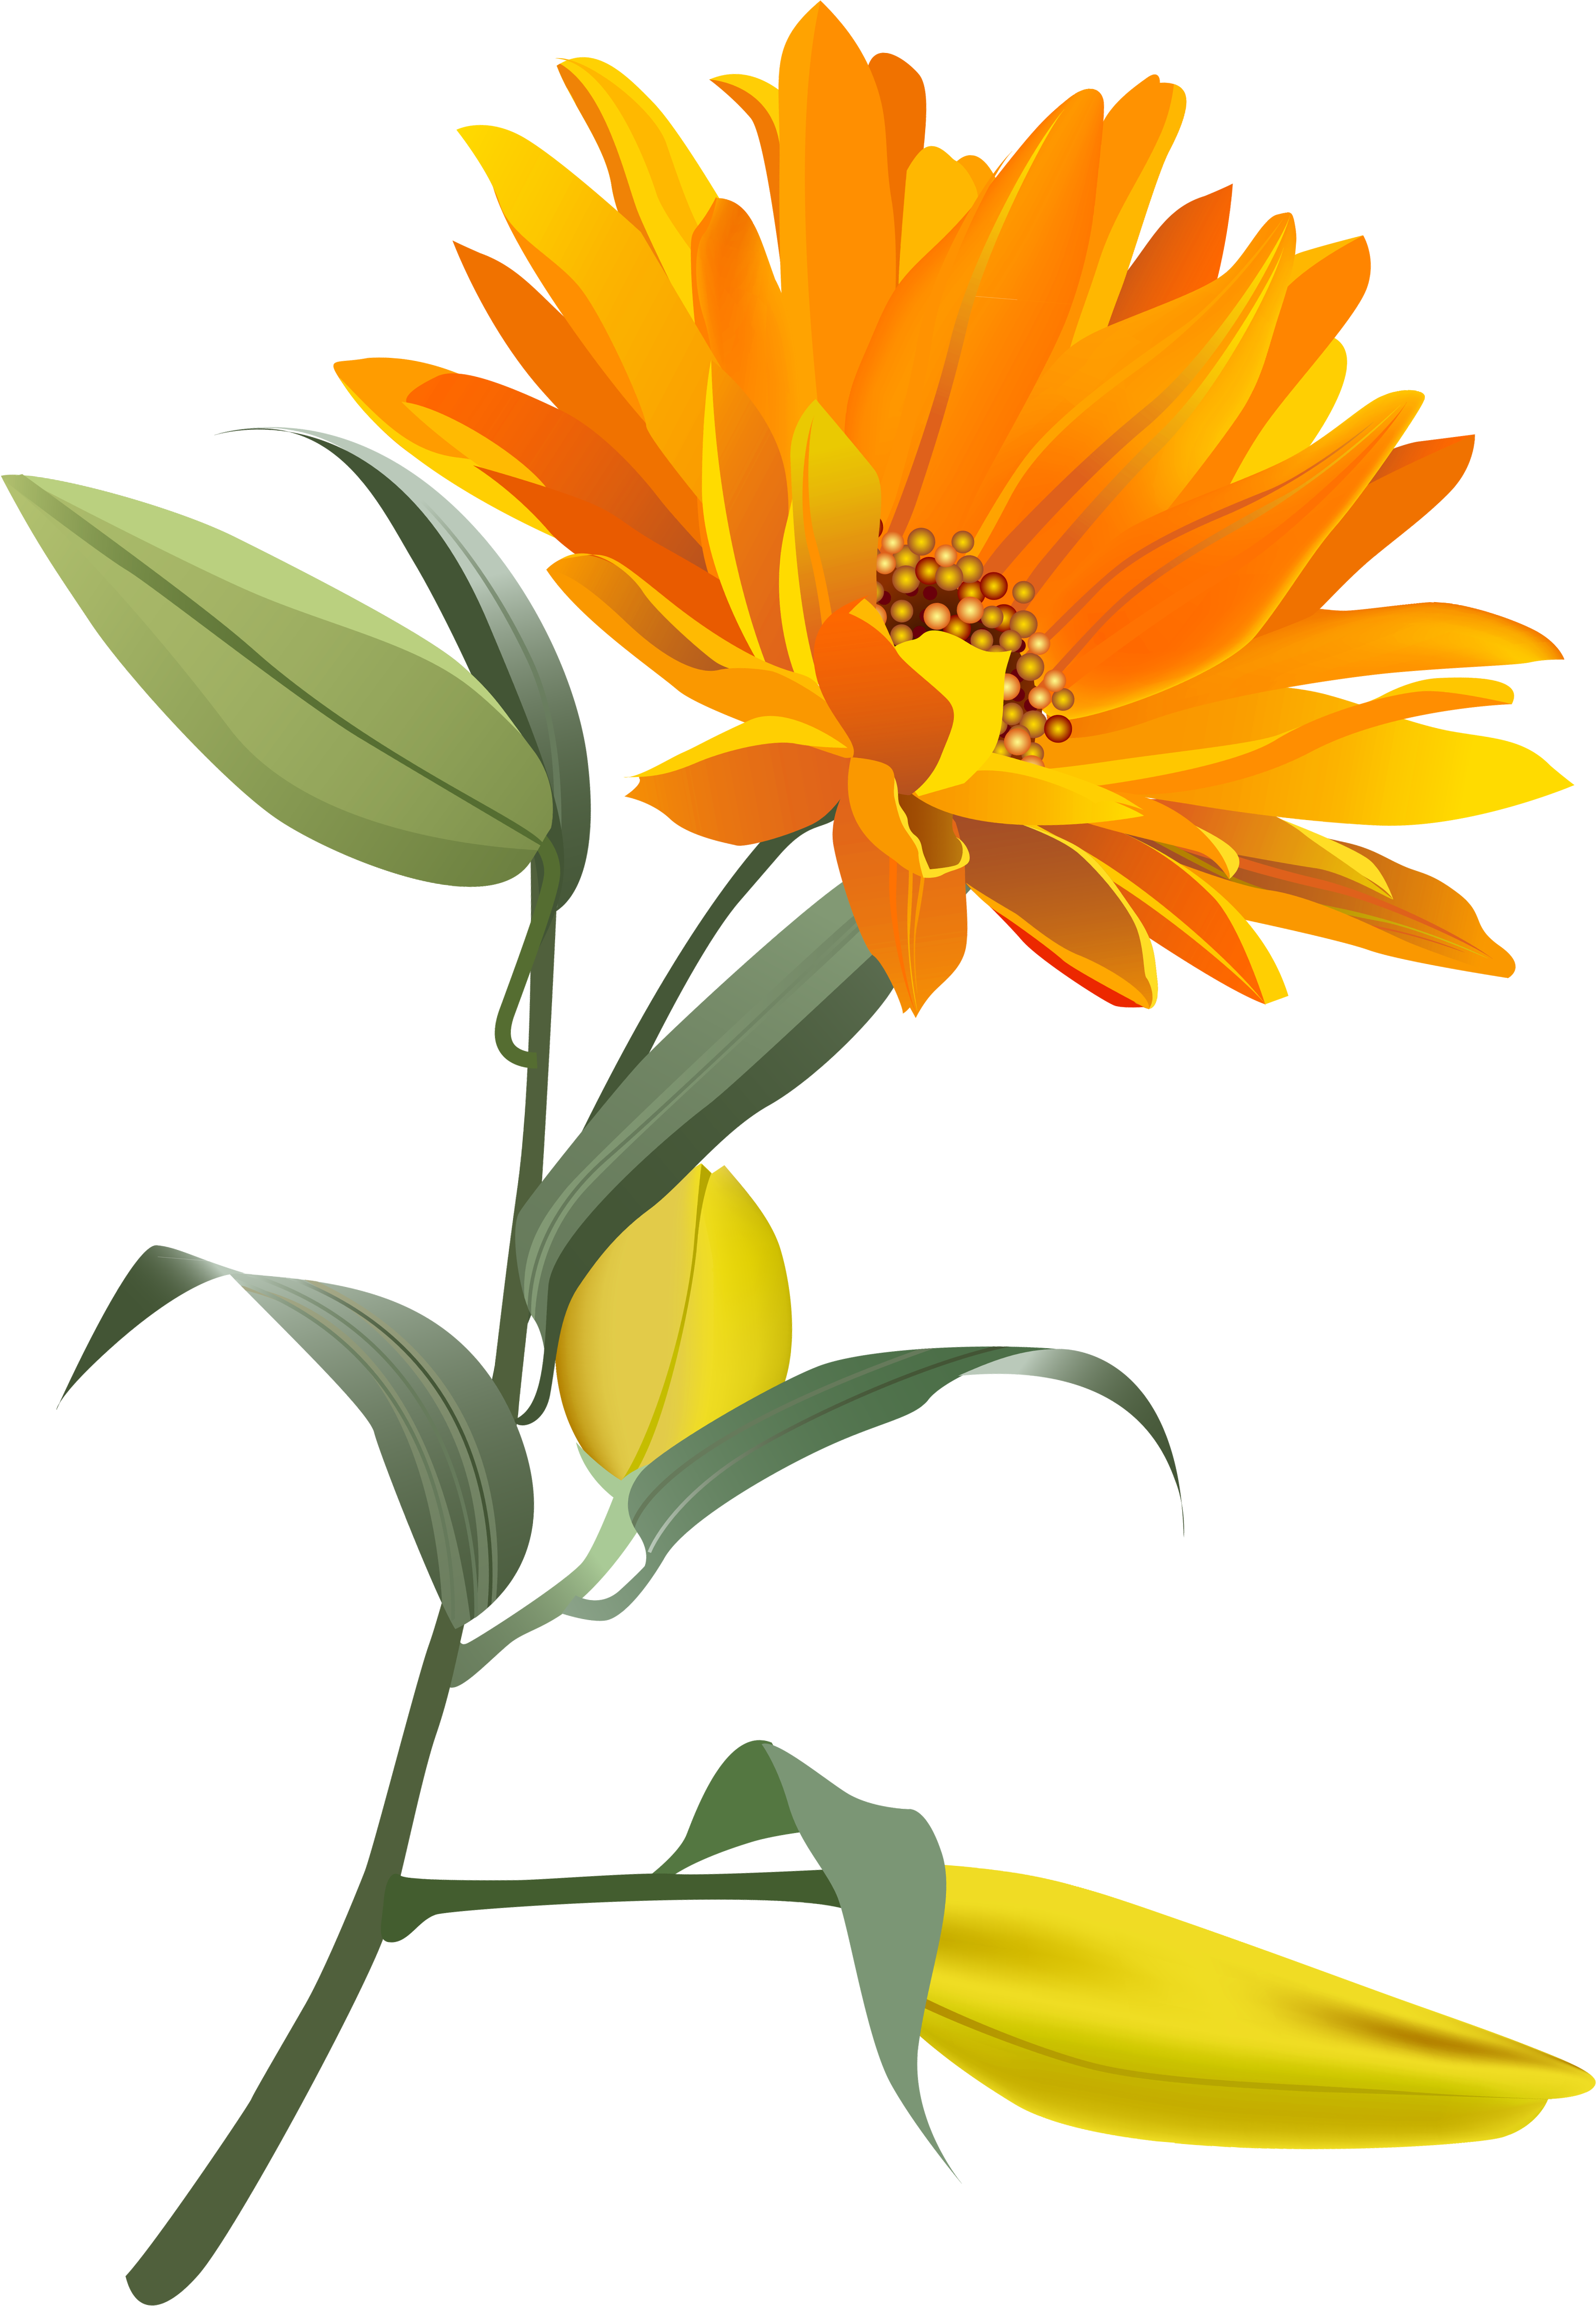 Orange Flower Png Clip Art Image - Orange Flowers Transparent Background (3243x4747), Png Download